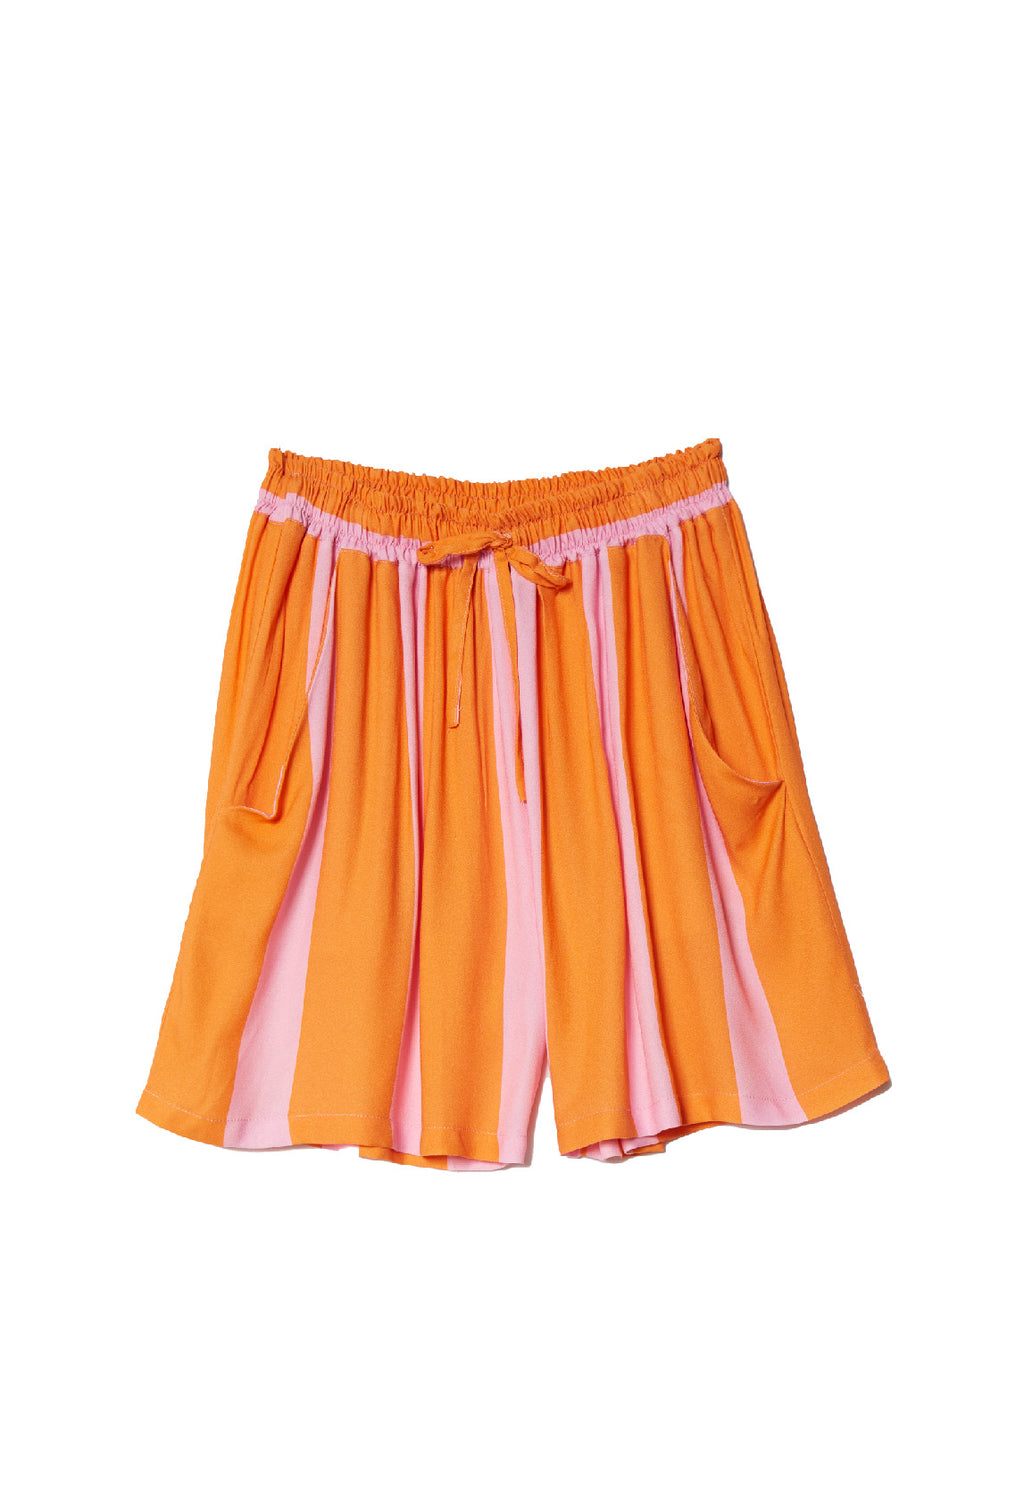 Bali Shorts